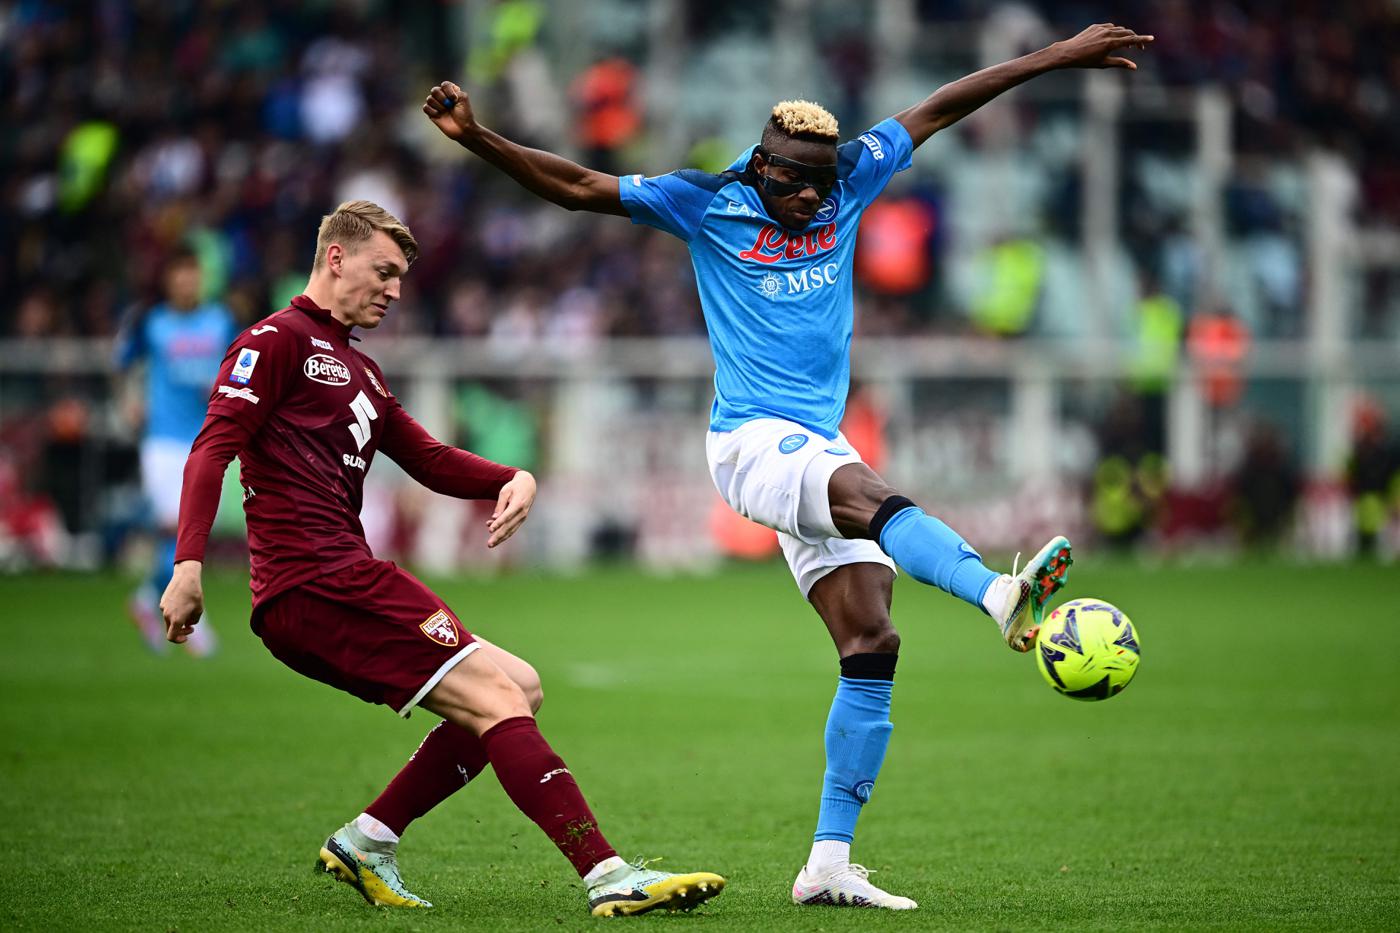 Torino - Napoli - 0:4. Mistrzostwa Włoch, runda 27. Recenzja meczu, statystyki